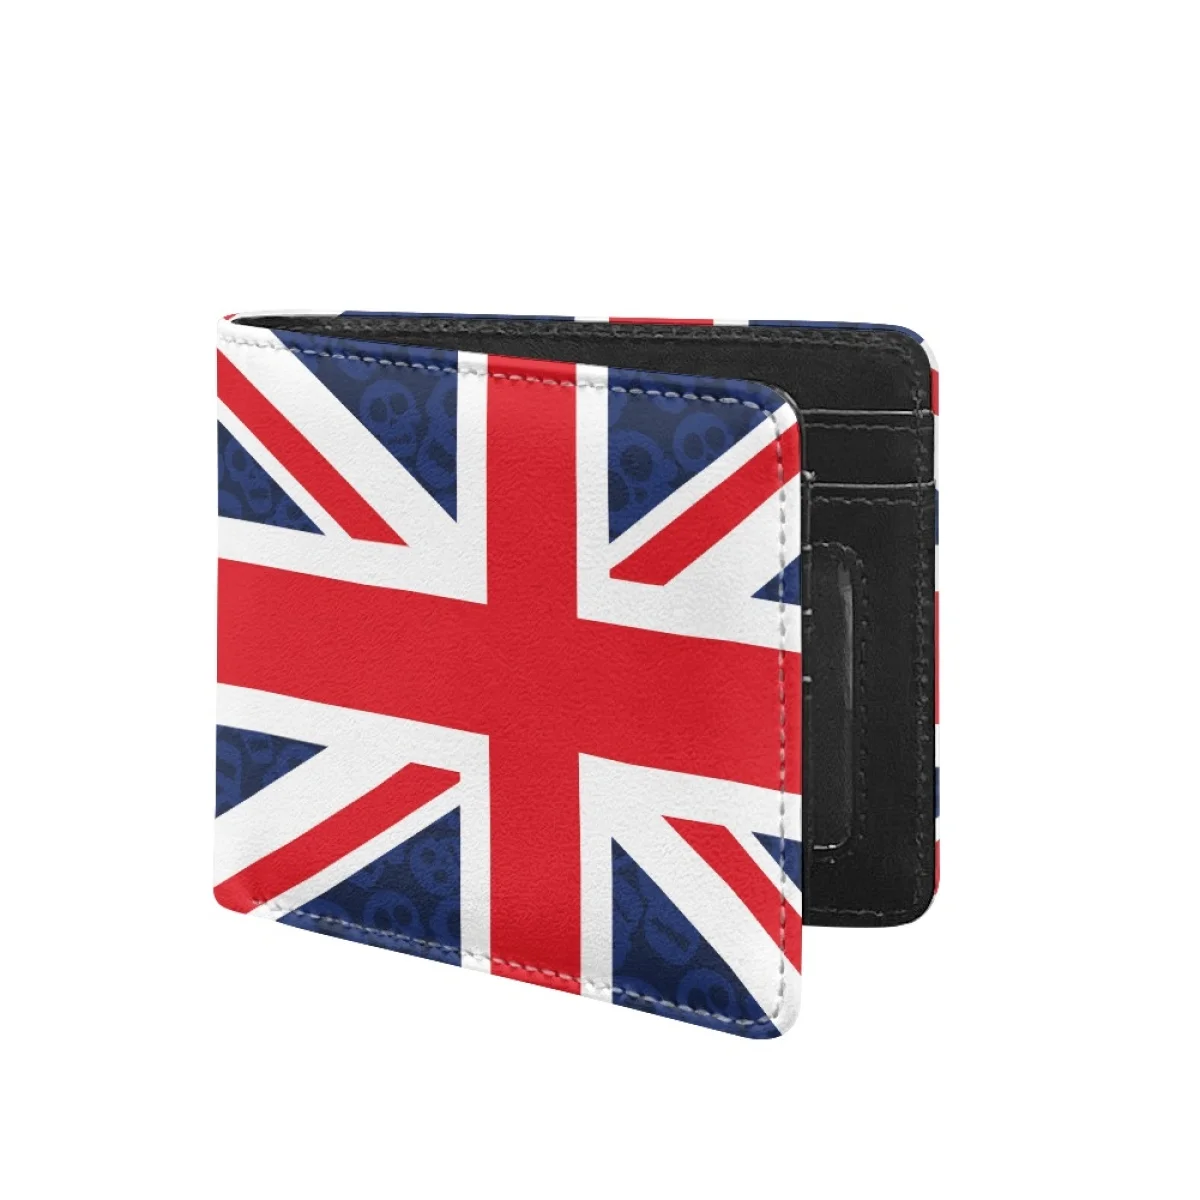 

Кошелек мужской классический с принтом британского флага, дизайнерский складной бумажник с несколькими отделениями для карт и мелочей